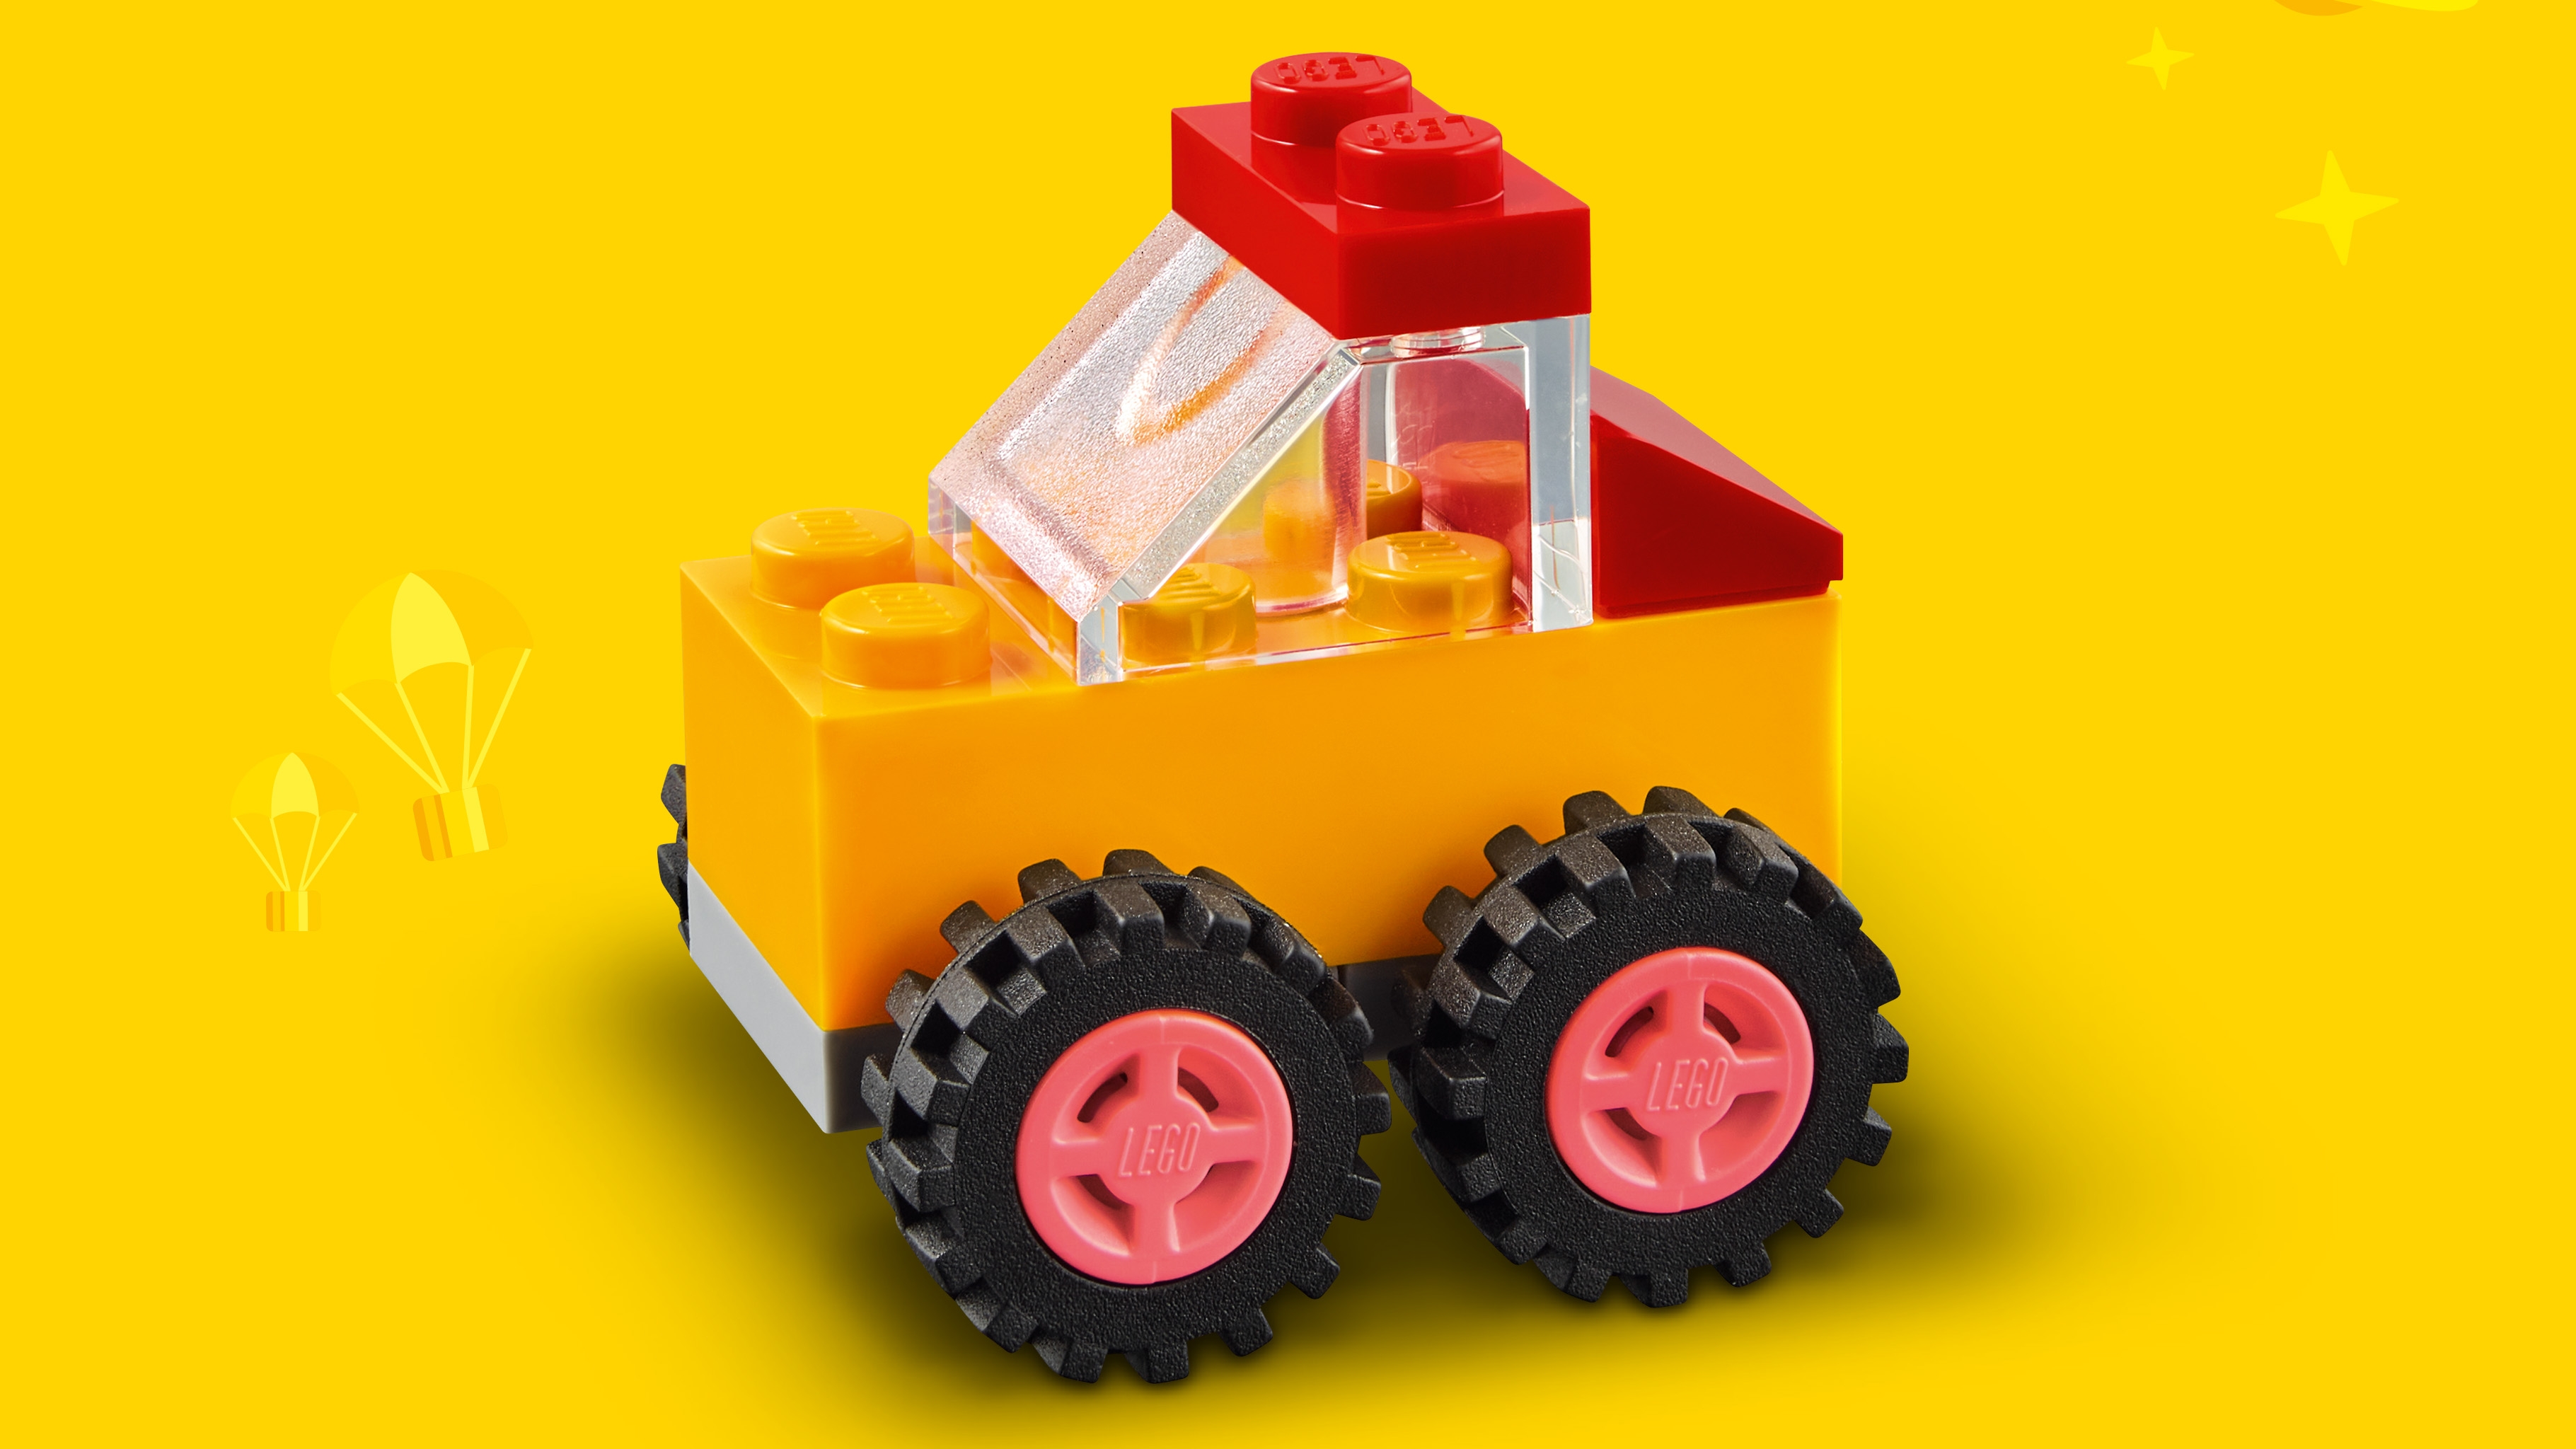 Bricks and Wheels 11014 - Sets - LEGO.com for kids